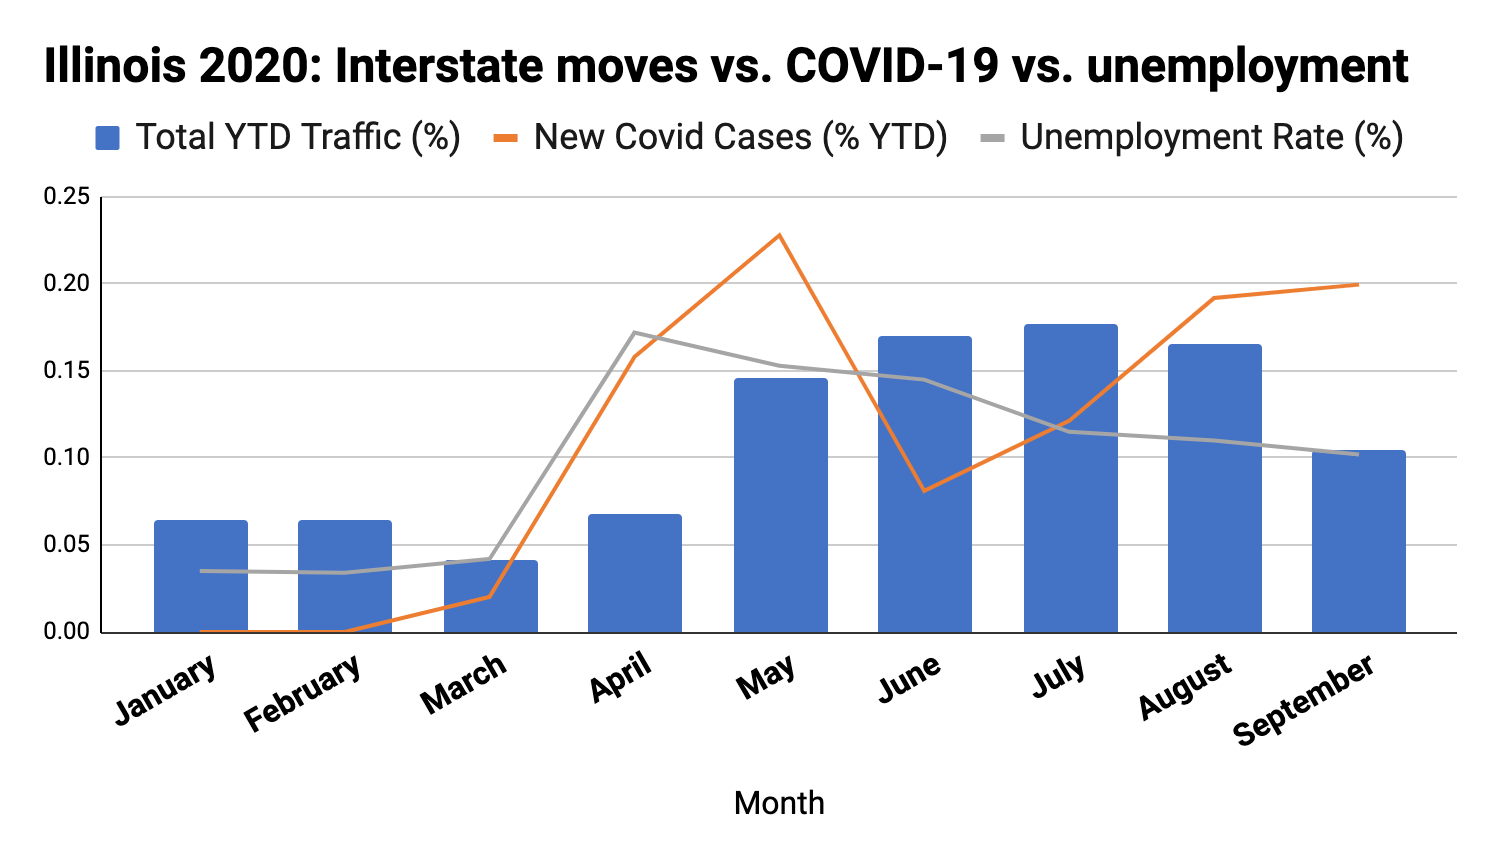 illinois 2020: interstate moves vs COVID-19 vs unemployment